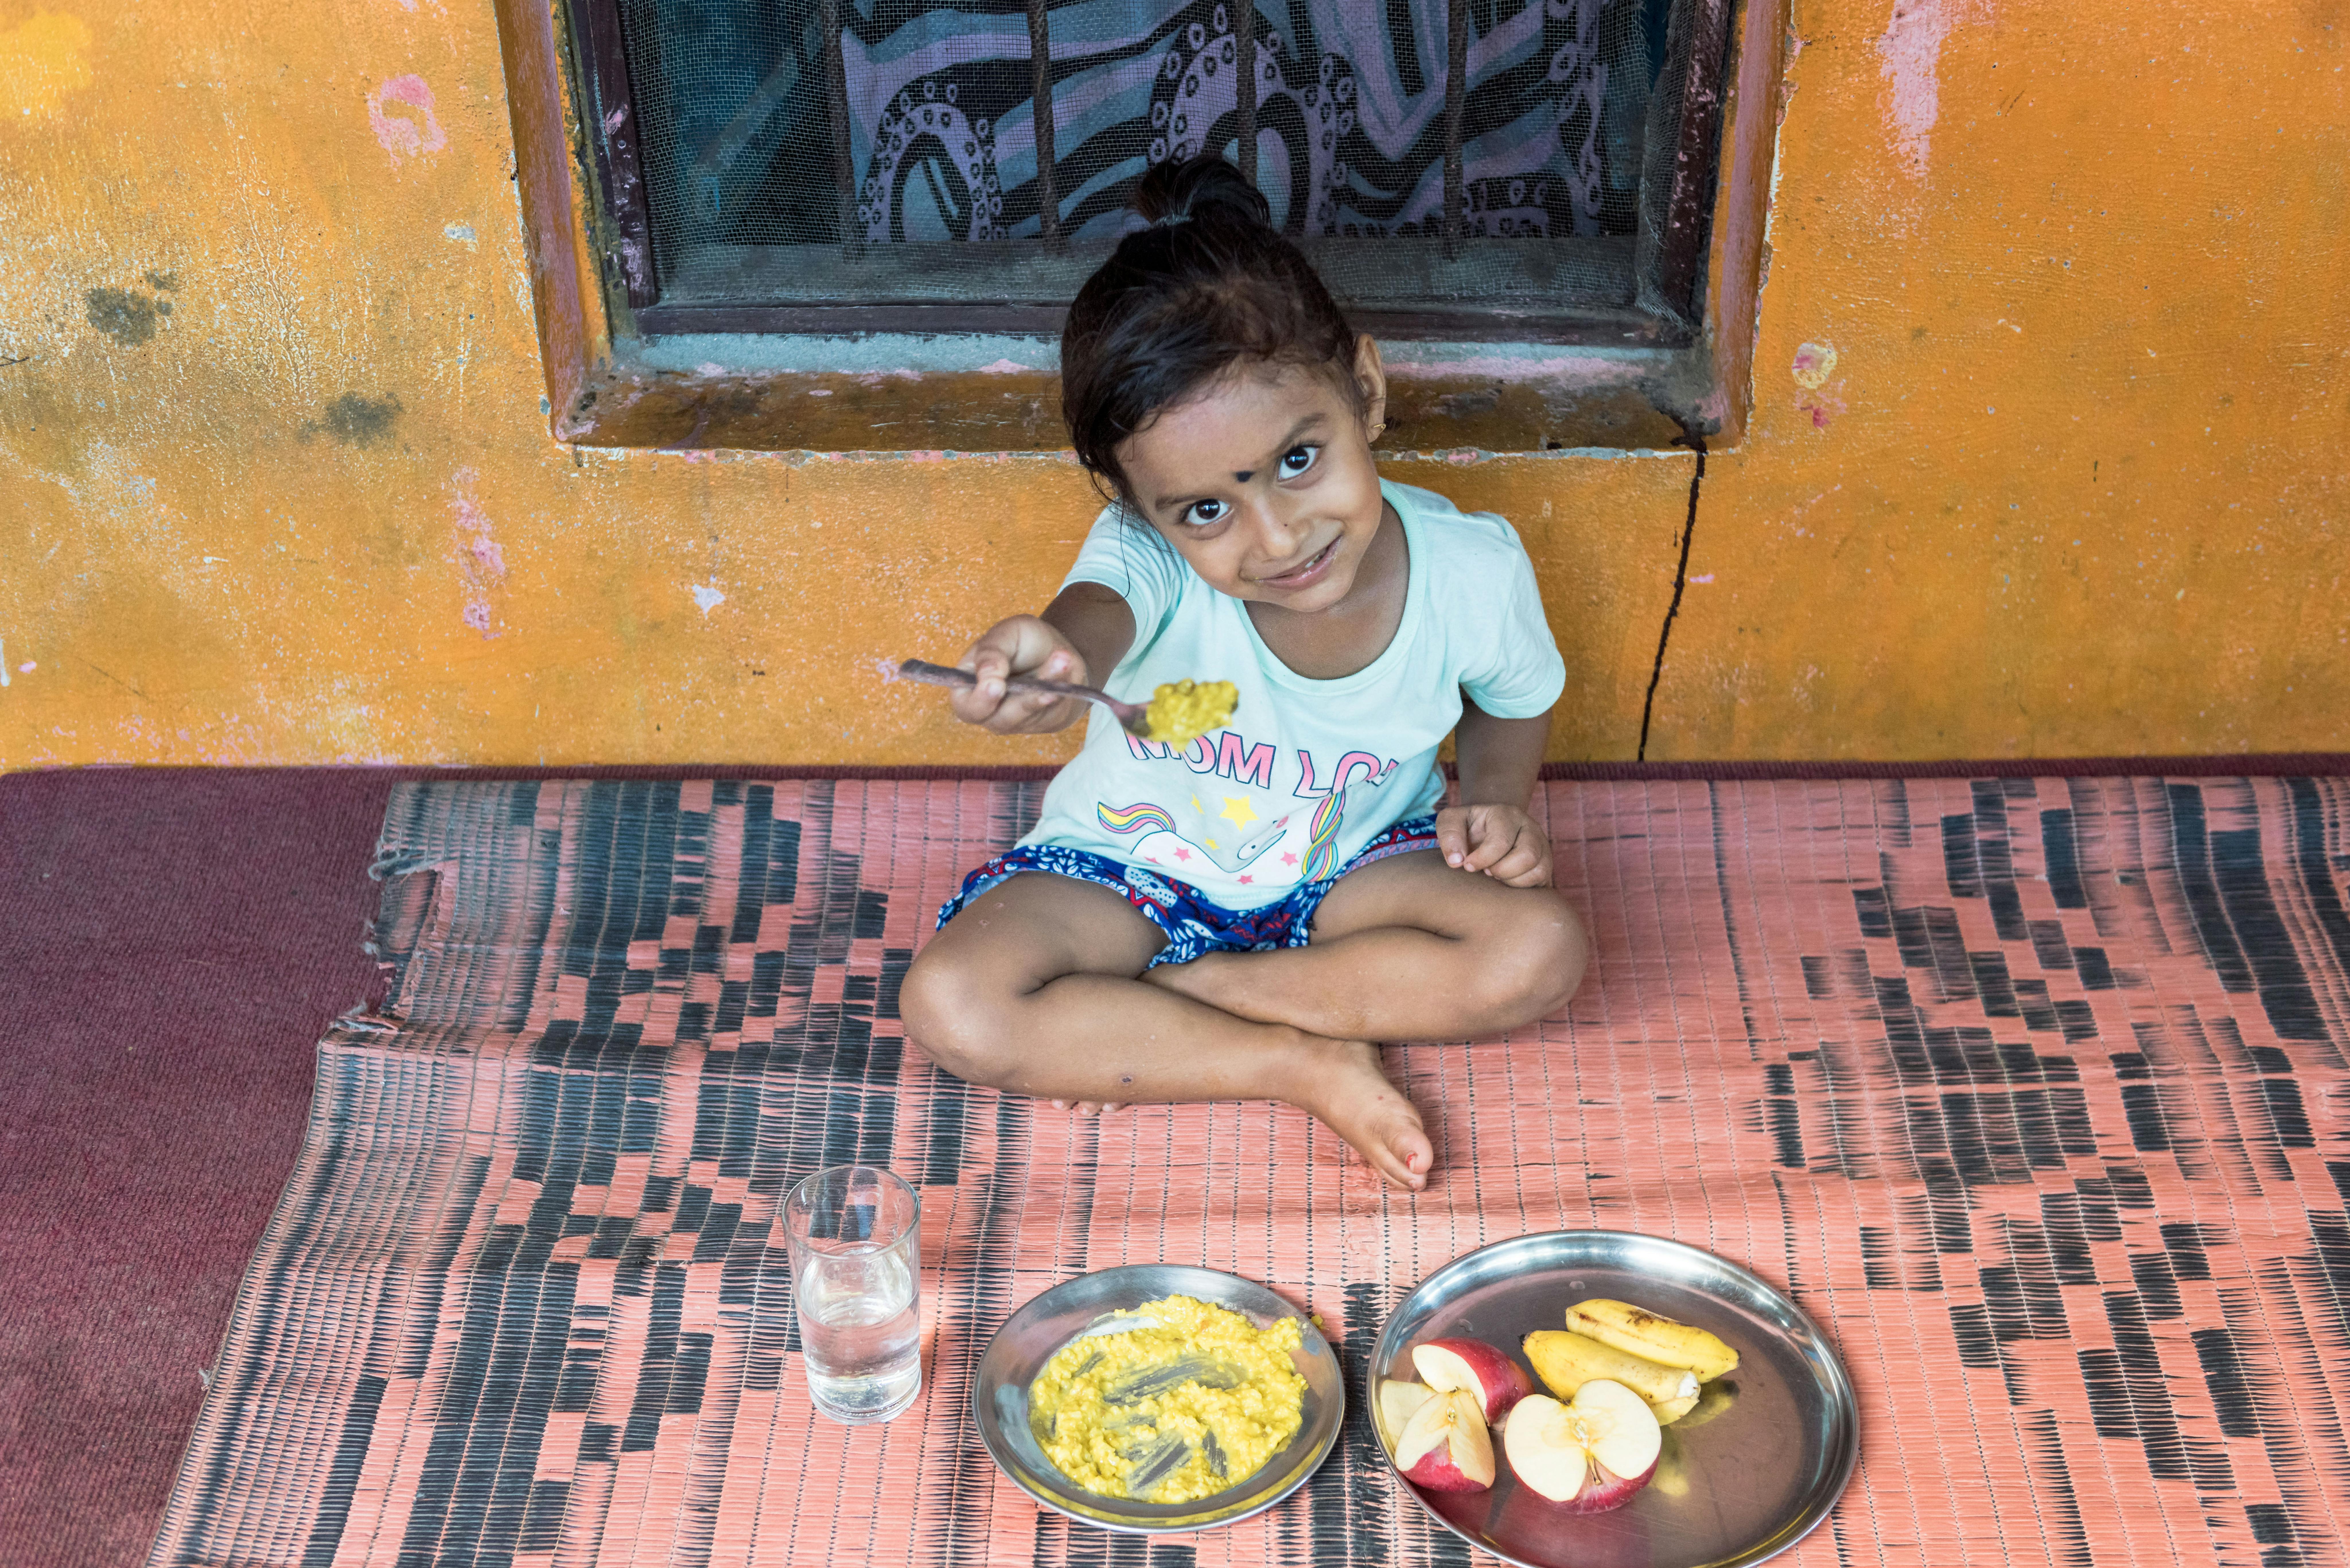 Girisha, 3 anni, ha in mano il cucchiaio con la merenda preparata dai nonni. Siamo a Ratnanagar, nel sud del Nepal.